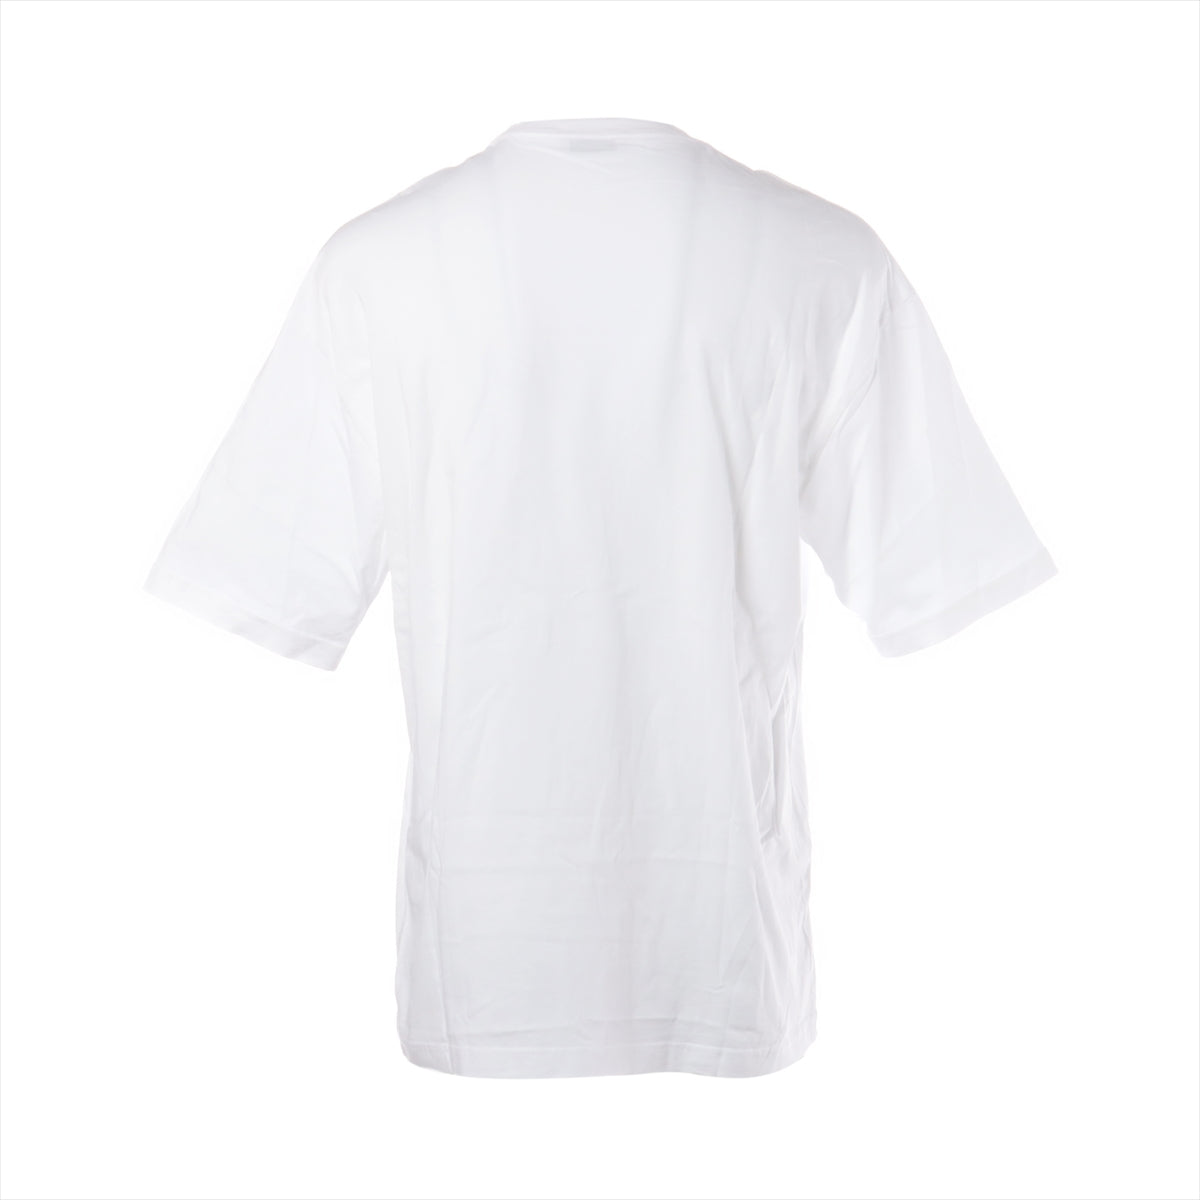 バレンシアガ BB 18年 コットン Tシャツ S メンズ ホワイト  556109